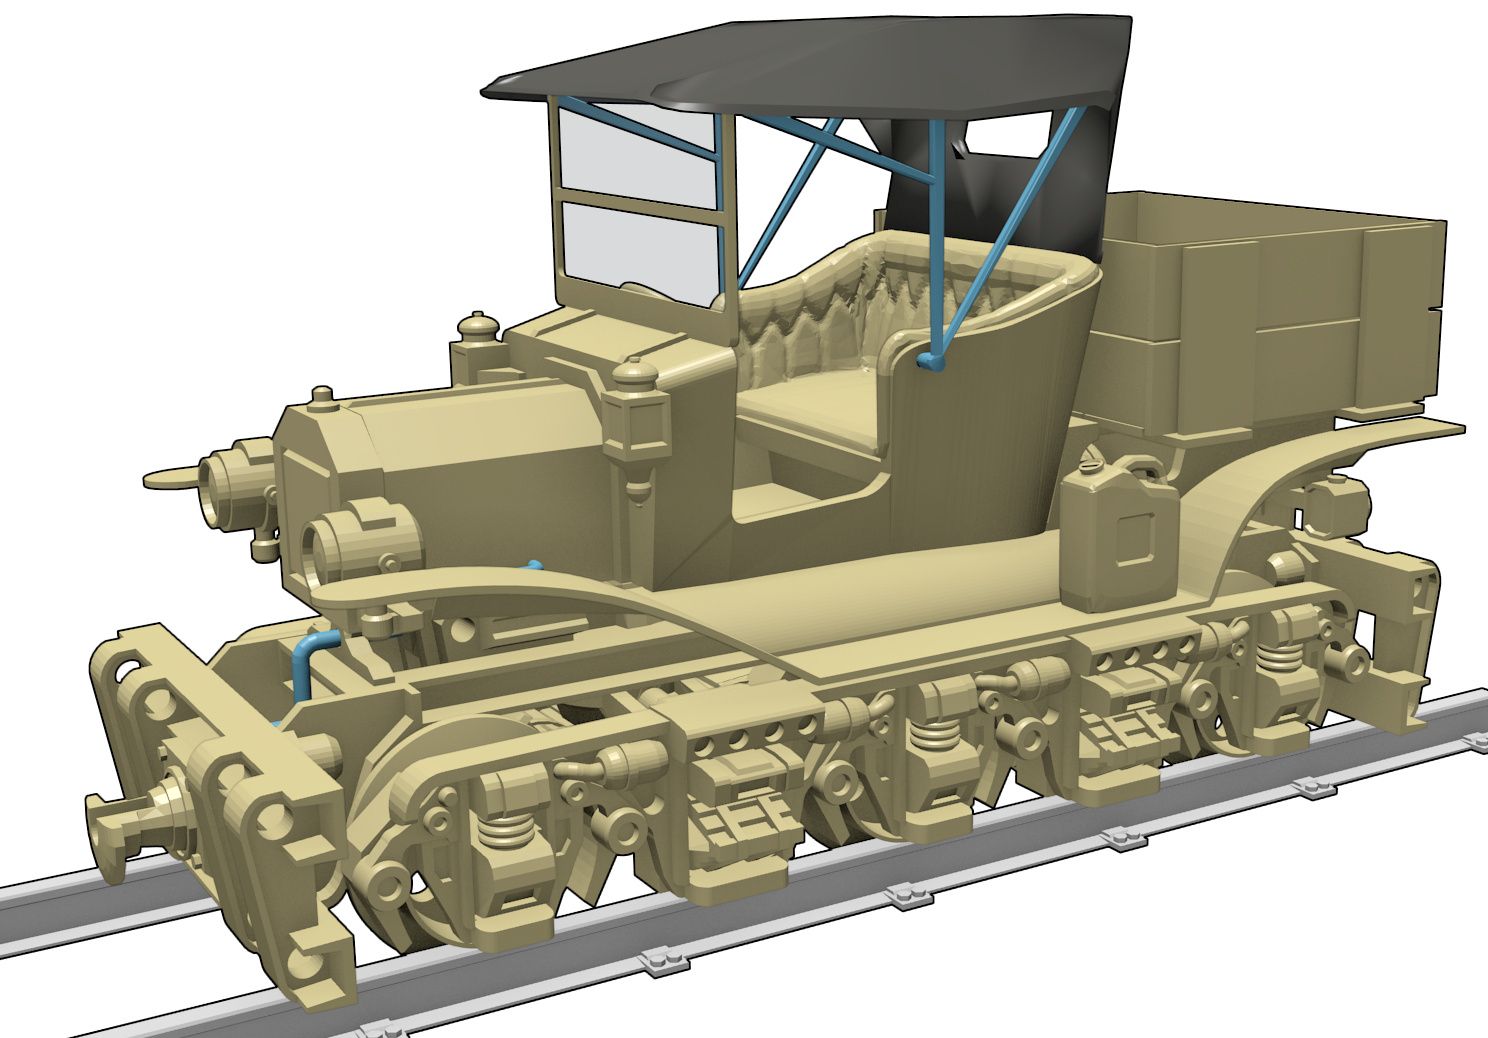 VintageRailCar_AssemblyRender.jpg Download free STL file Vintage Railcar - 36mm gauge • 3D printer design, BouncyMonkey